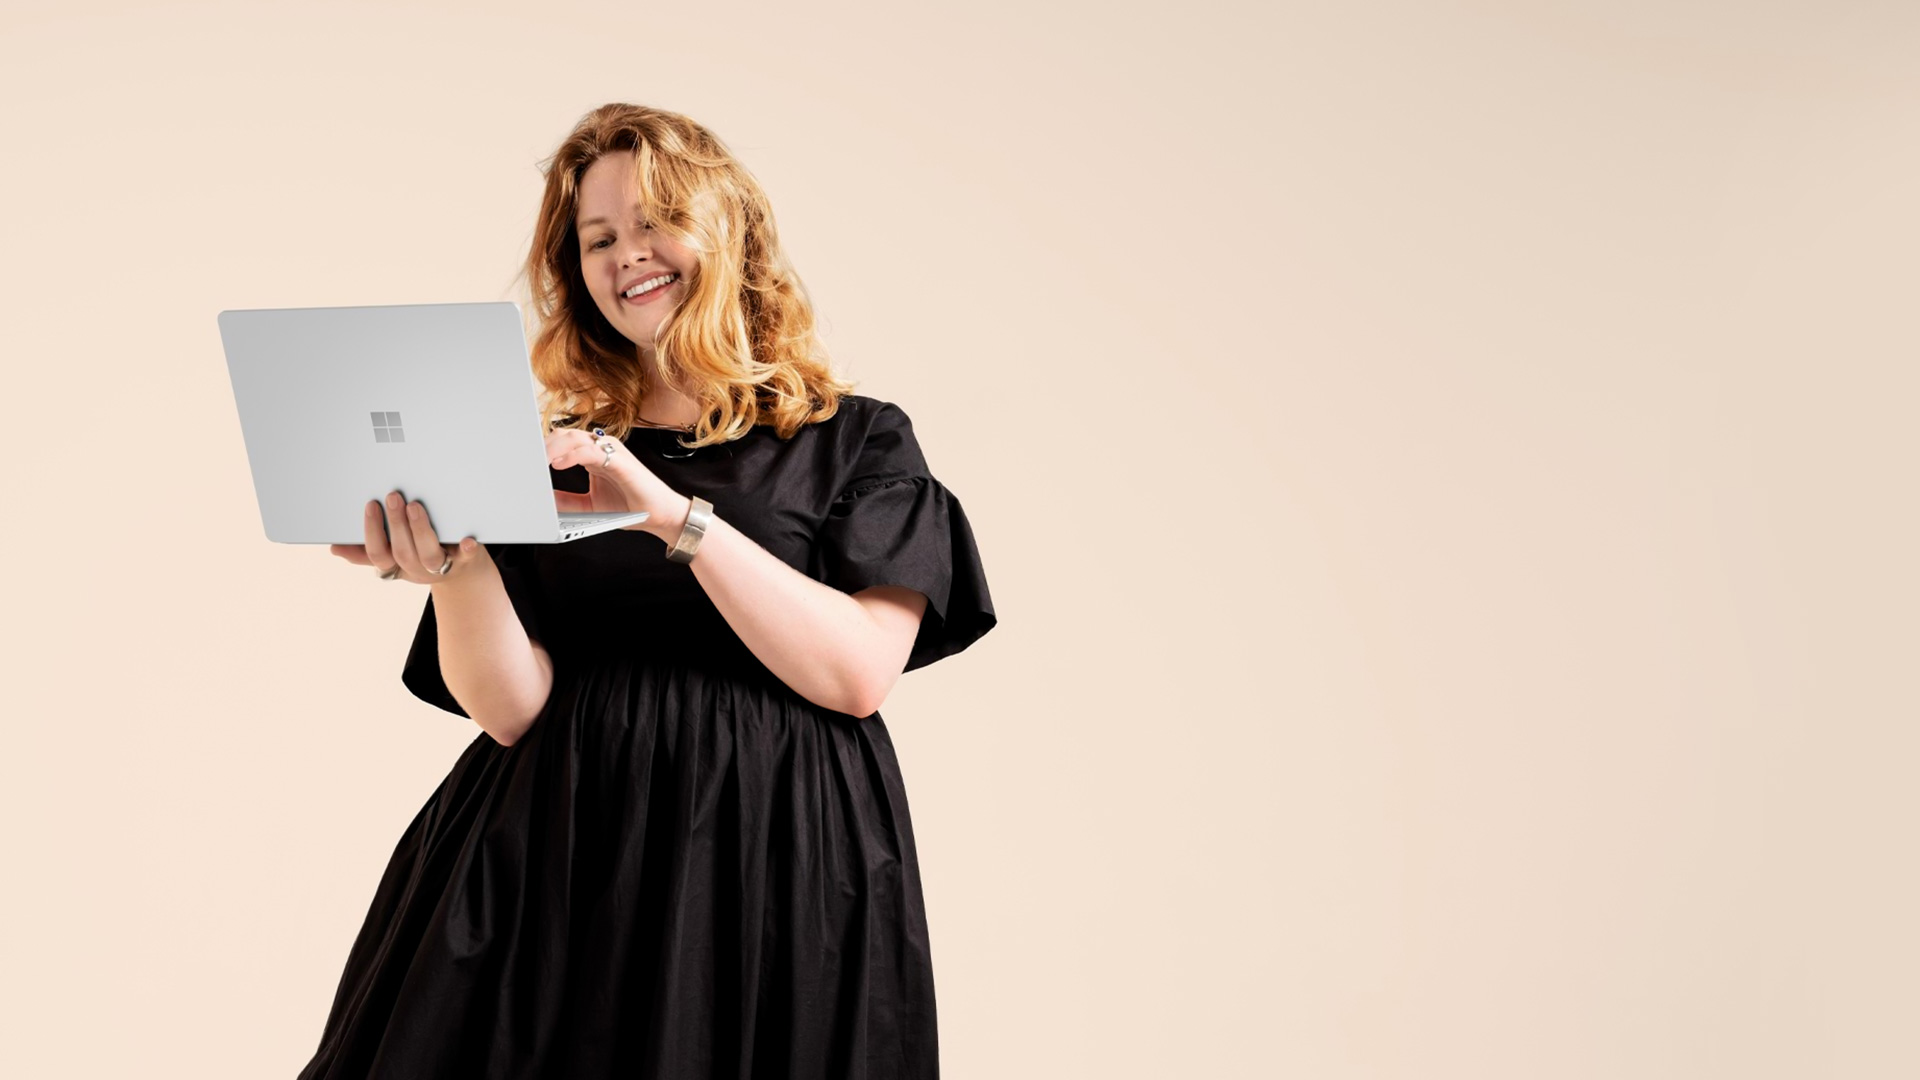 Smehljajoča se ženska, ki v rokah drži odprto napravo Surface Laptop Go 2 v platinasto srebrni barvi, pripravljeno na tipkanje.